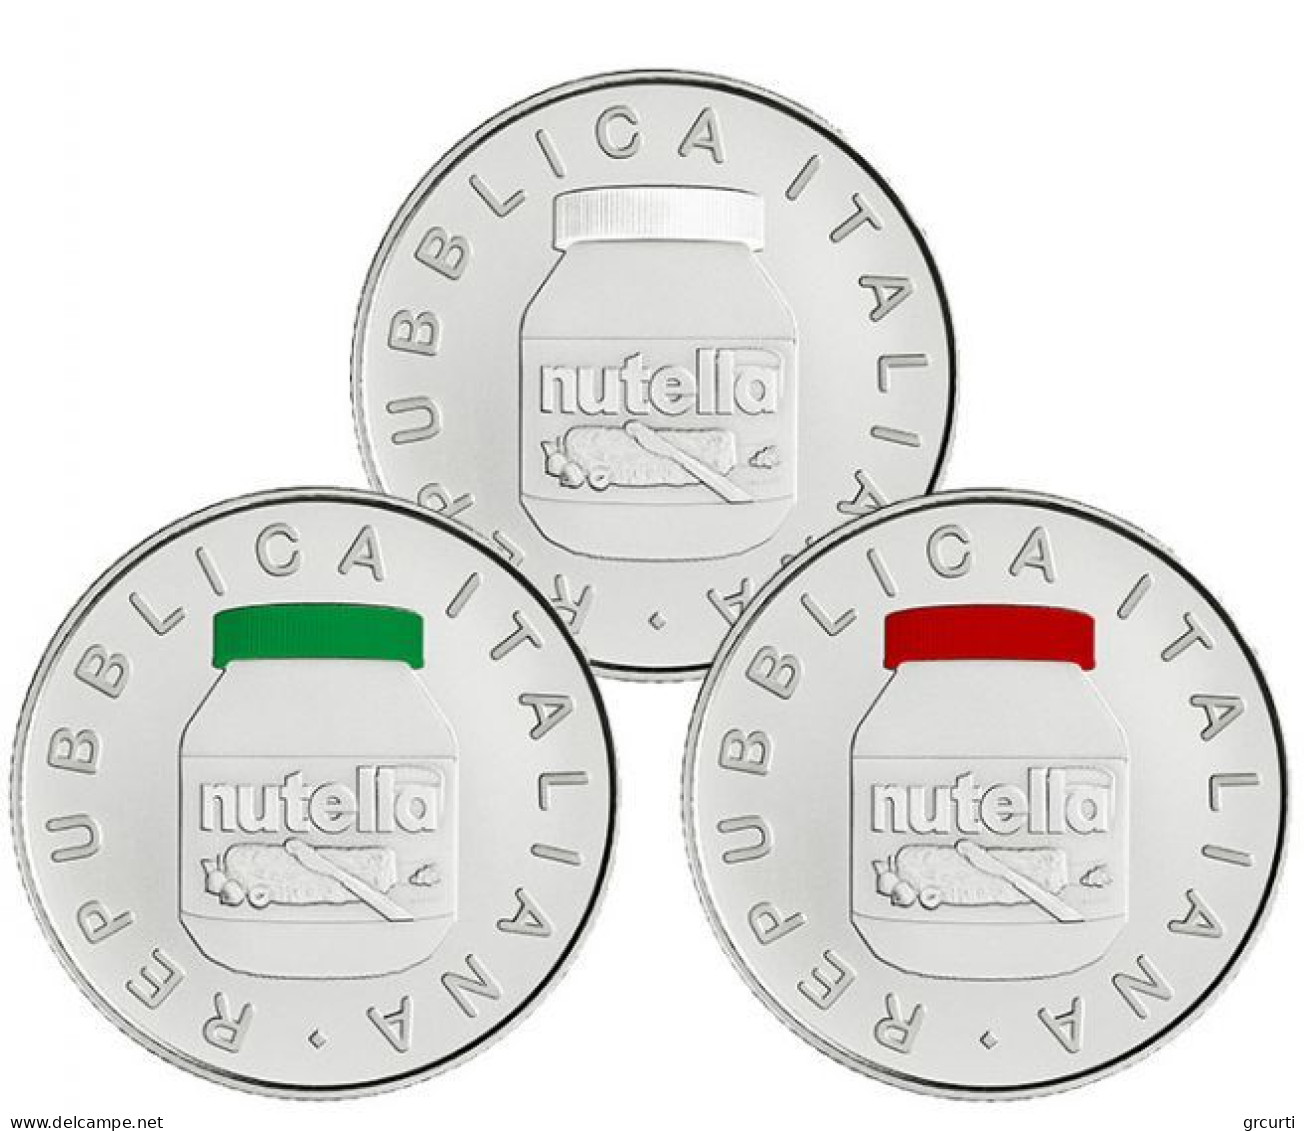 Italia - 3 X 5 Euro 2021 - Eccellenze Italiane - Nutella - N# 341414 N# 341411 N# 341415 - UC# 246 UC# 247 UC# 248 - Italie